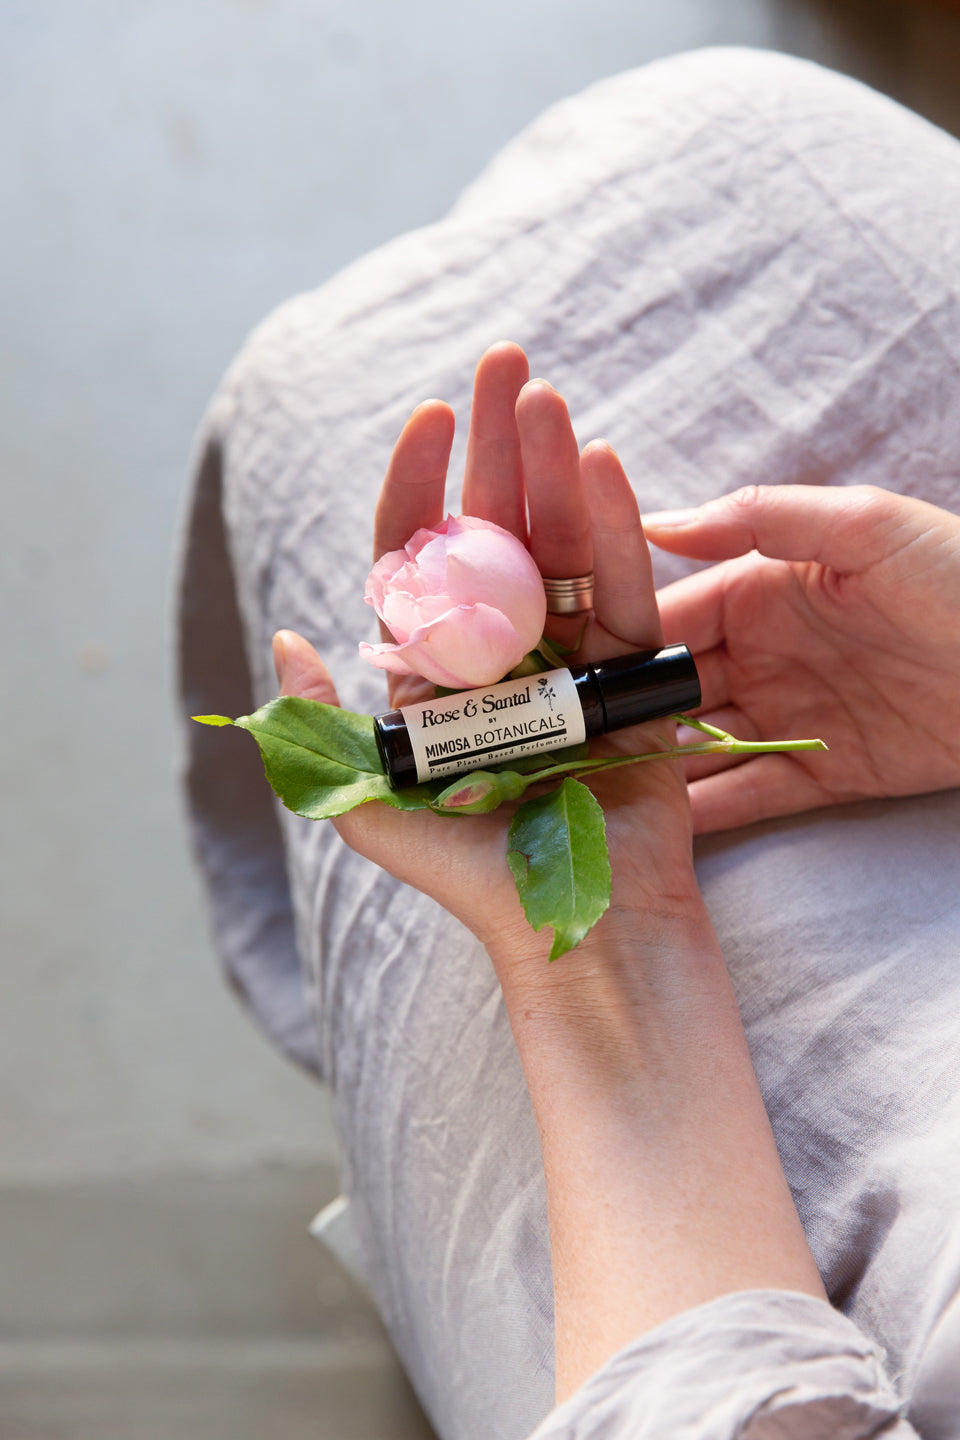 Rose & Santal Botanical Perfume